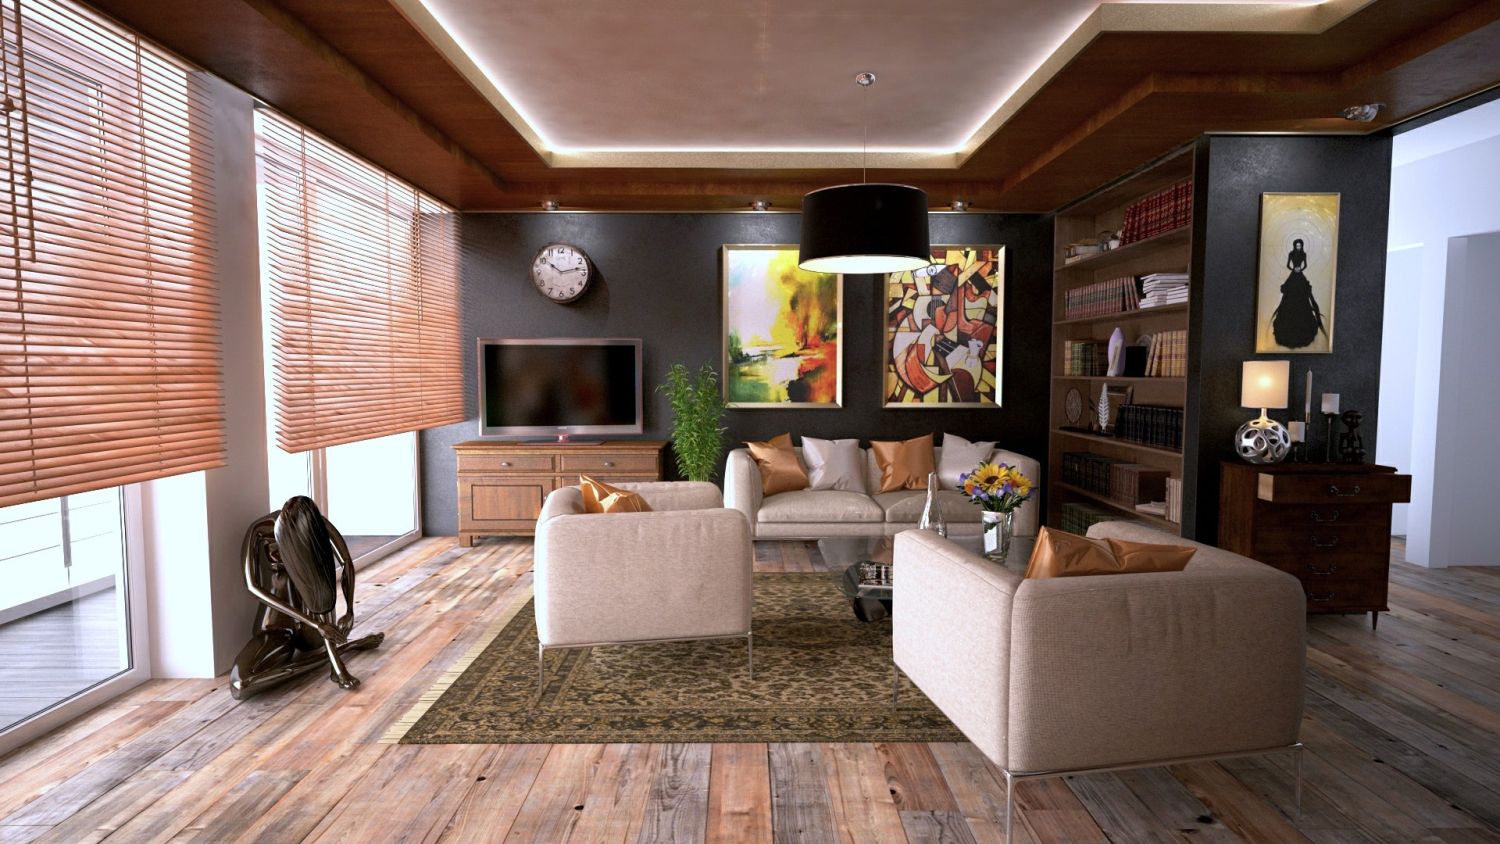  renowacja podłogi drewnianej